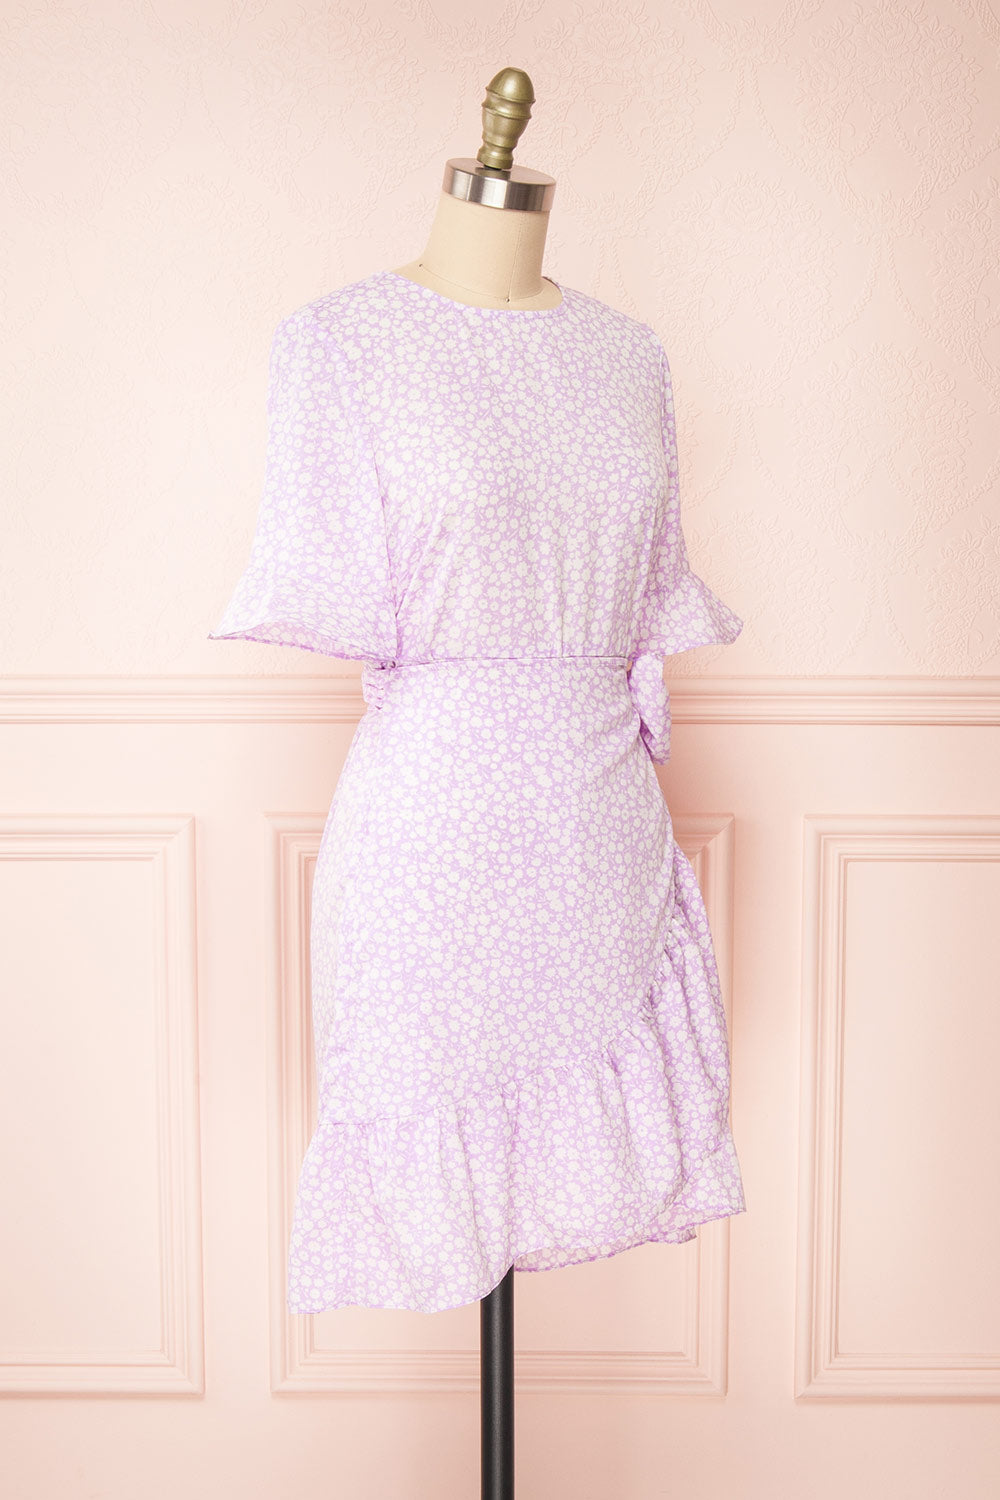 Stevette Lilac Short Faux-Wrap Dress w/ Ruffles | Boutique 1861 sid eview